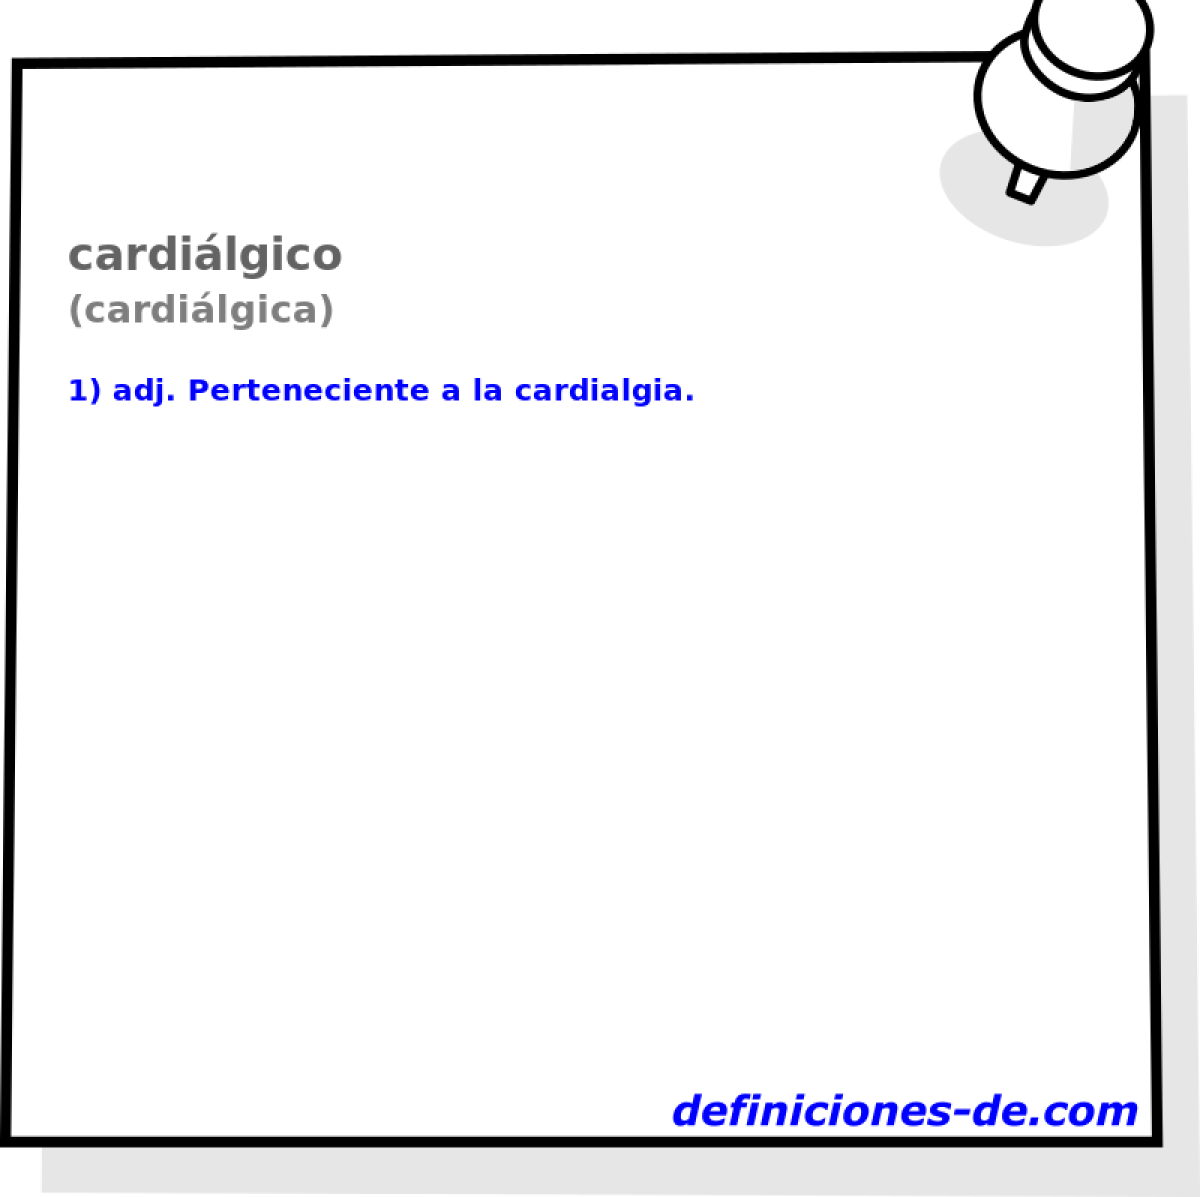 cardilgico (cardilgica)